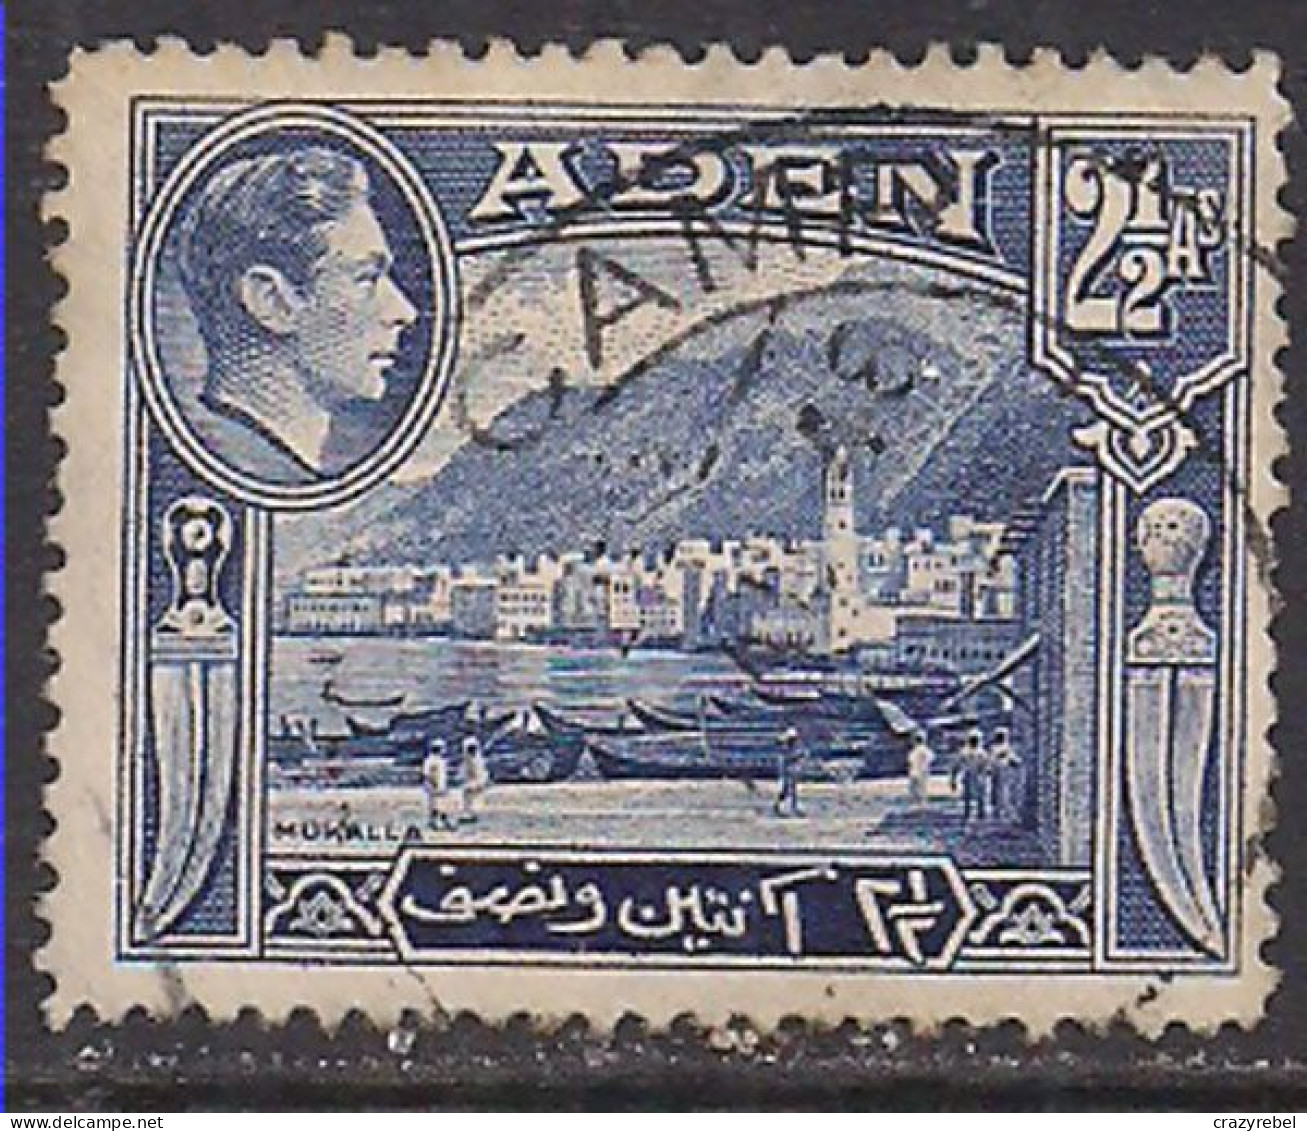 Aden 1939 - 1948 KGV1 2 1/2a Blue Used ( B1428 ) - Aden (1854-1963)